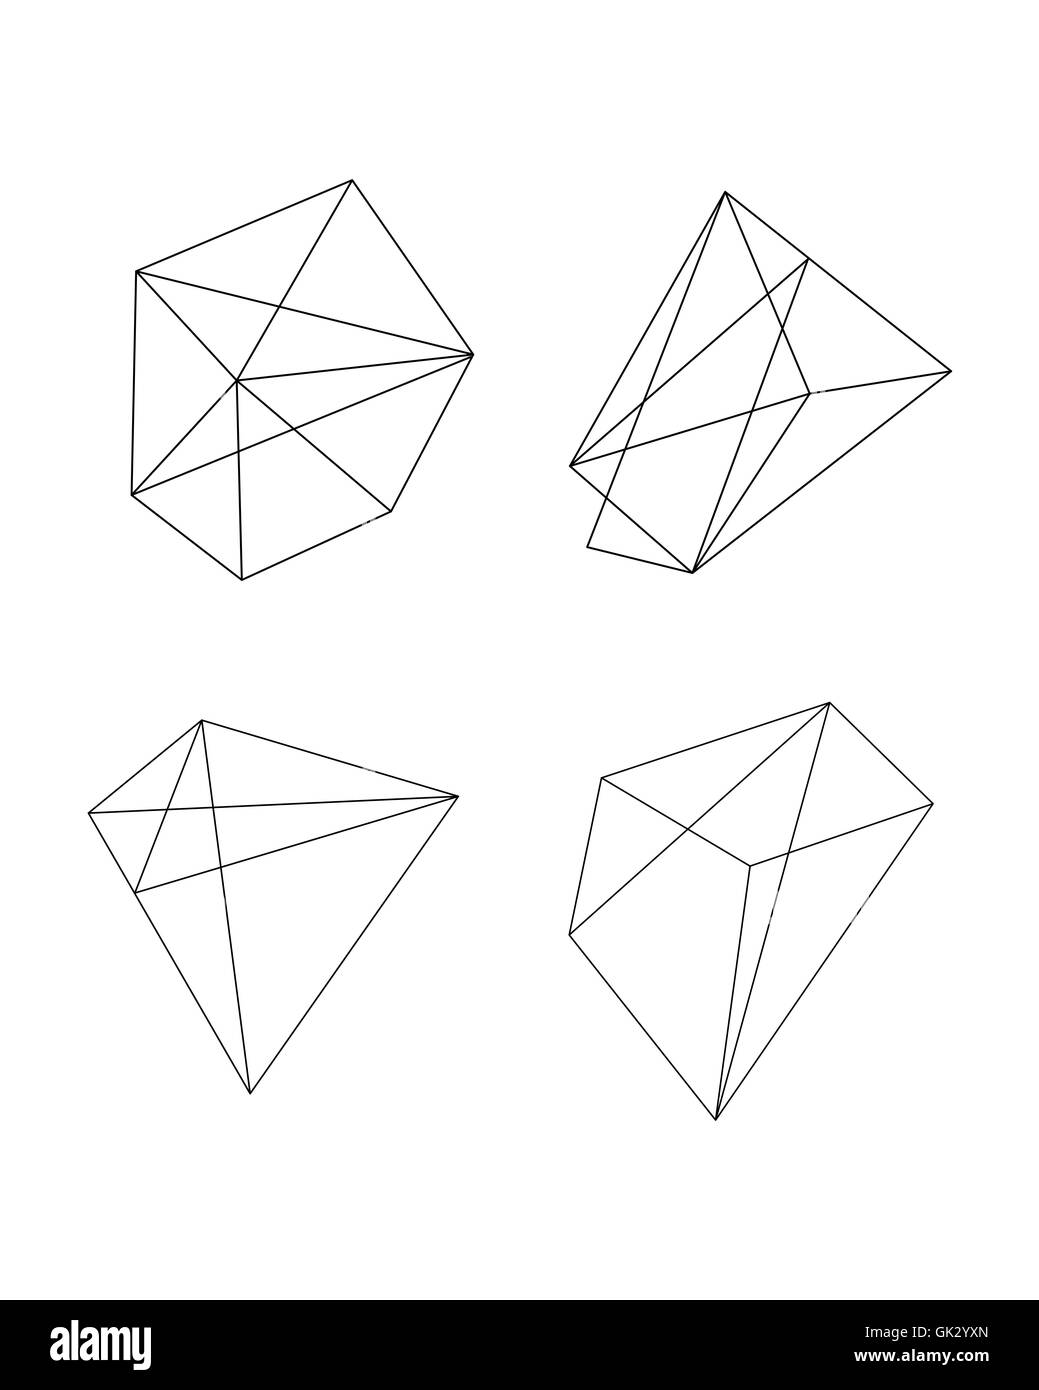 Vector illustration ou dessin de différentes formes abstraites géométriques polygonales Banque D'Images